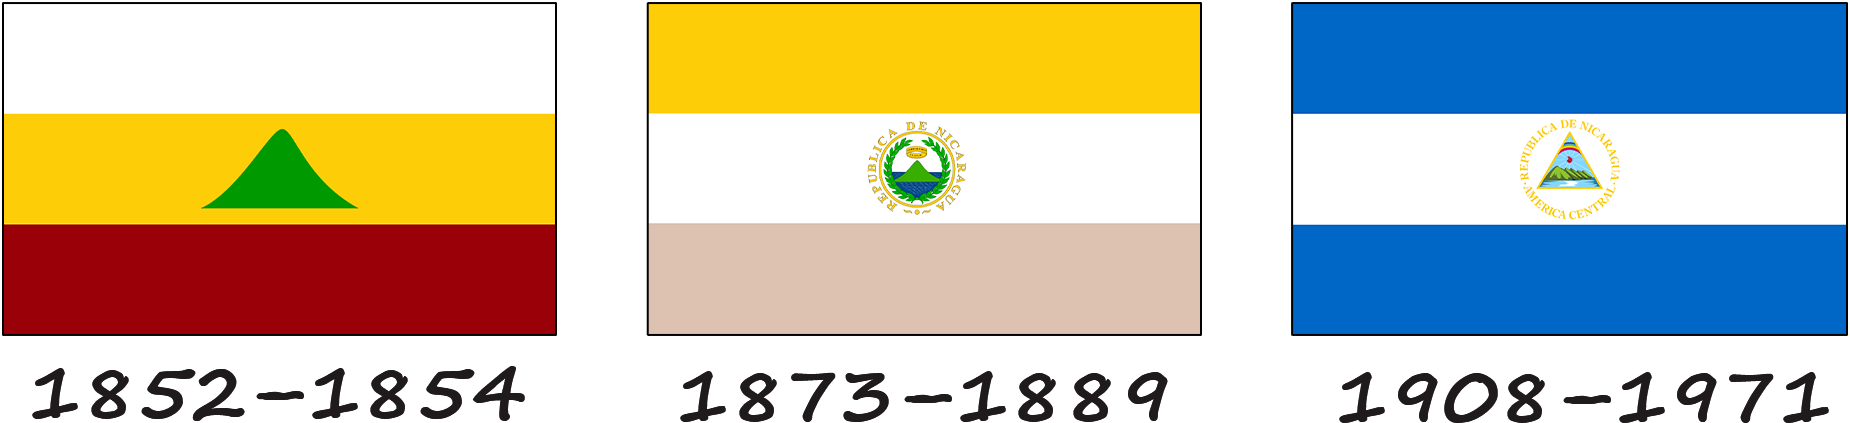 Historia de la bandera de Nicaragua